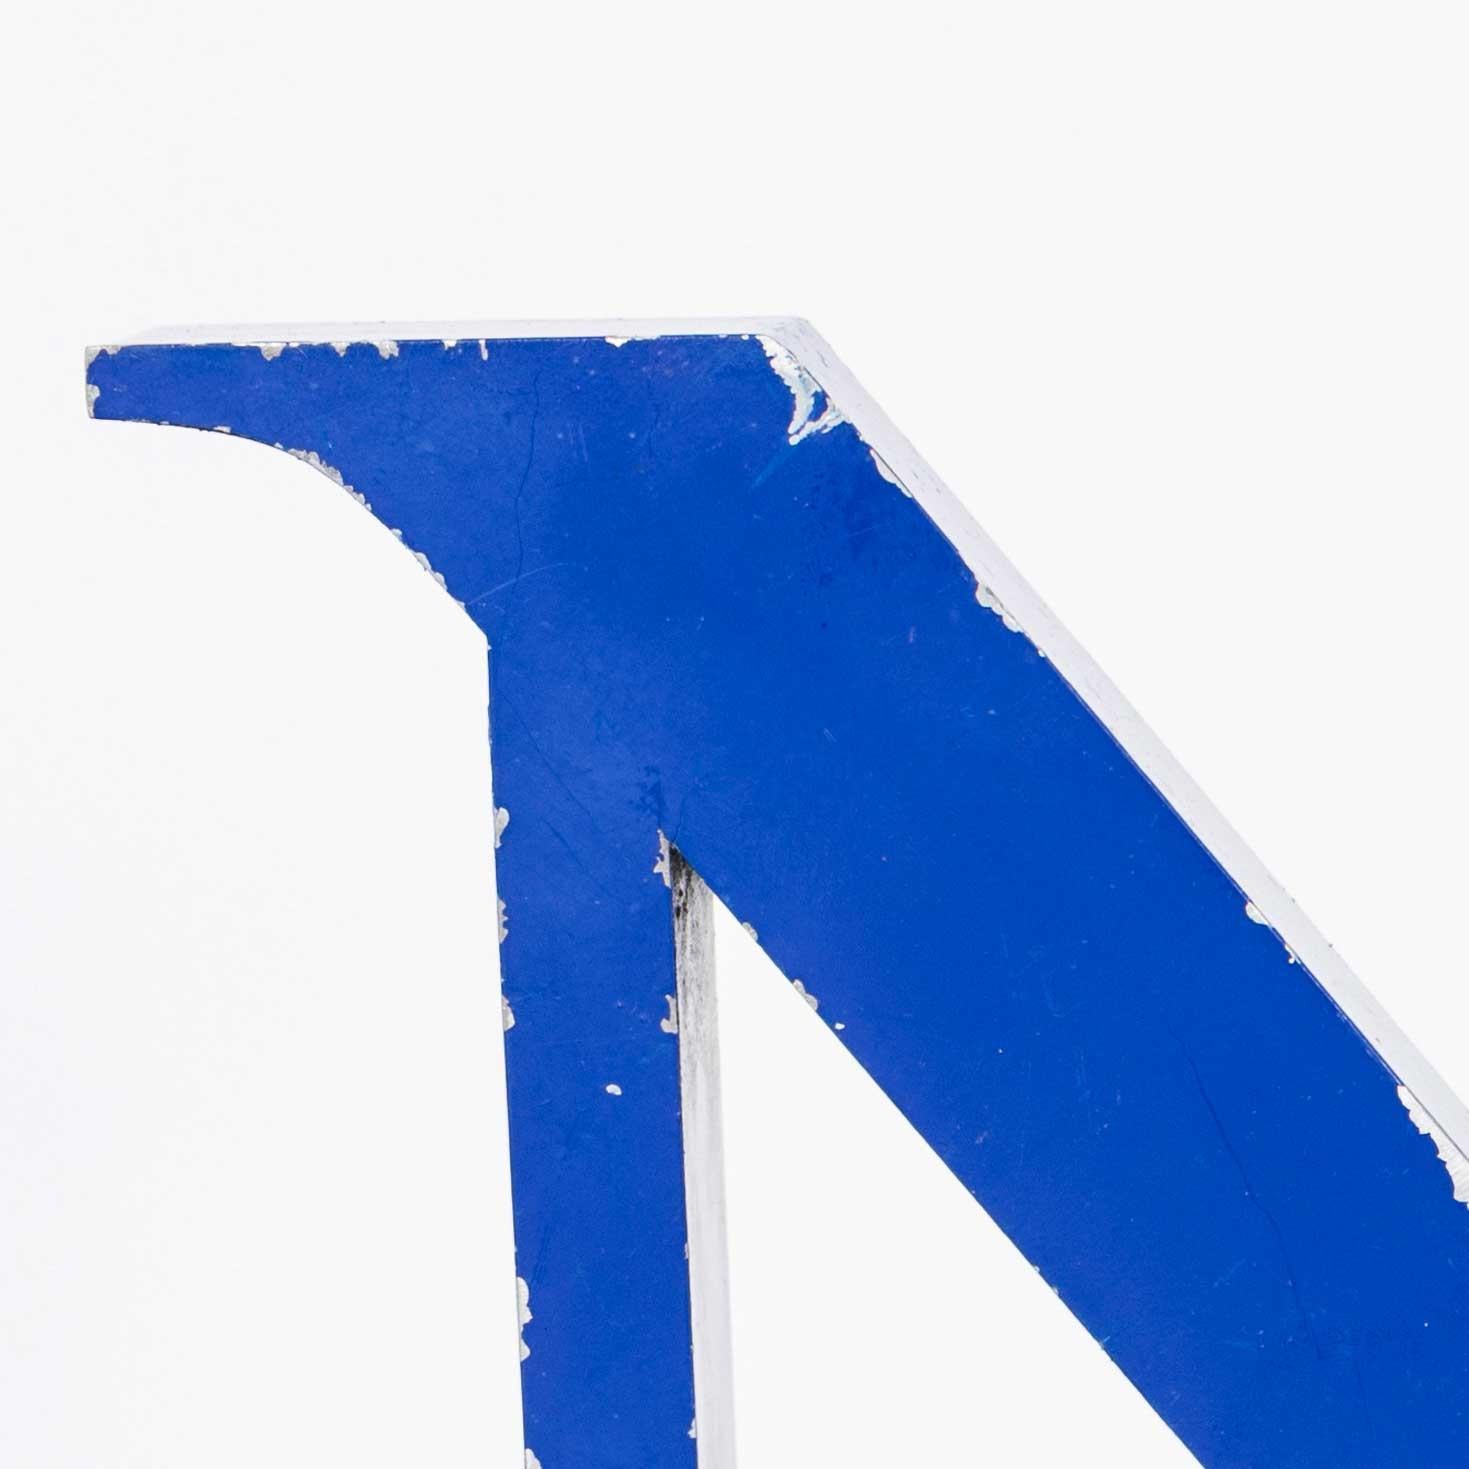 Lettre en métal bleu vintage - N moyen
Lettre en métal bleu vintage. Lettre de signalisation en métal de bonne taille avec une peinture bleue d'origine délavée. Taille 5x27x29 - D/H/W tous les cm.

RAPPORT D'ATELIER
Notre équipe d'atelier inspecte